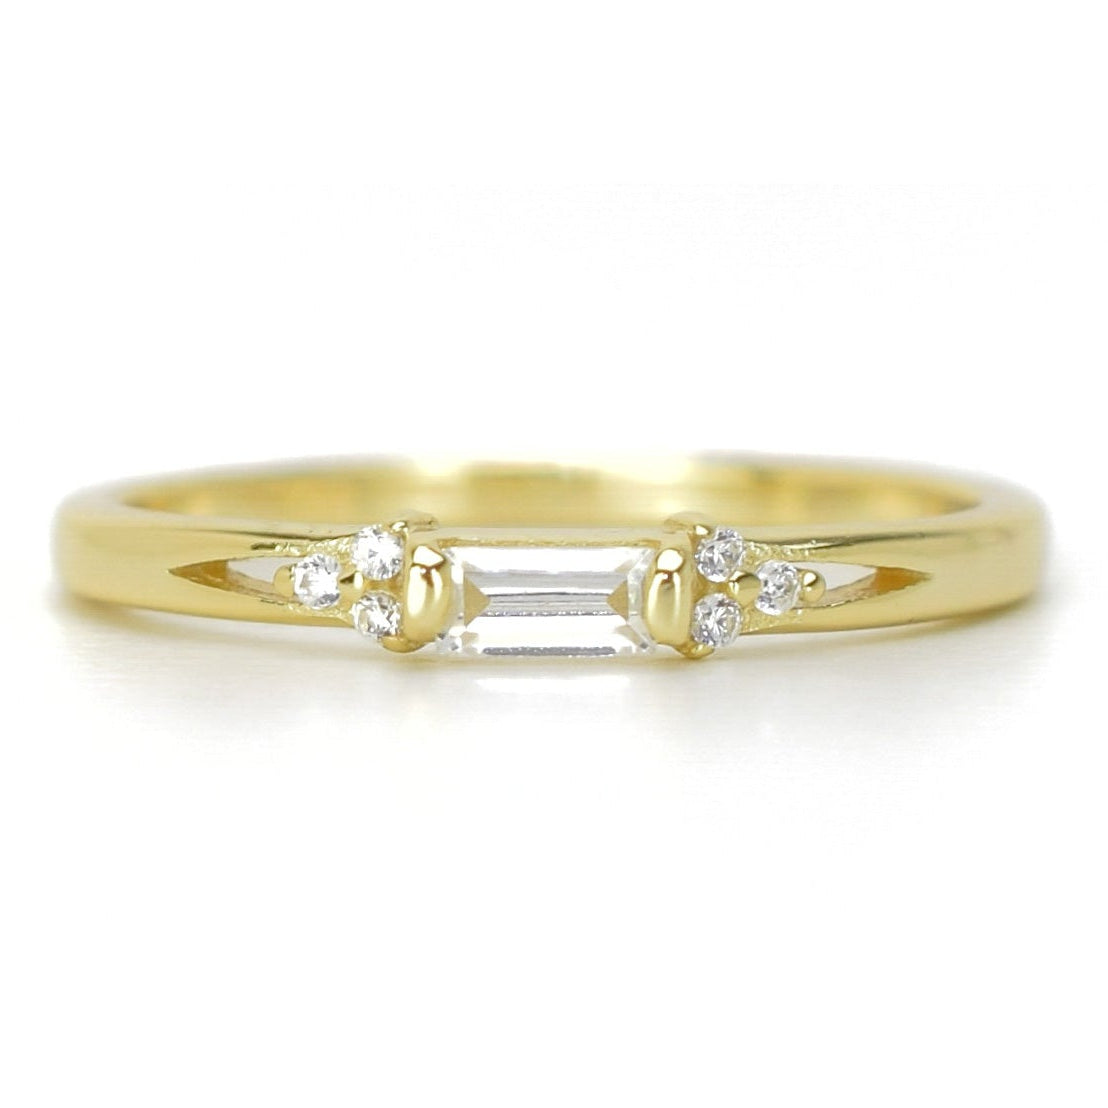 baquette ring, gouden ring voor dames, baquette ring rosegoud, ring met stenen zilver, verlovingsring voor dames, subtiele ring met stenen